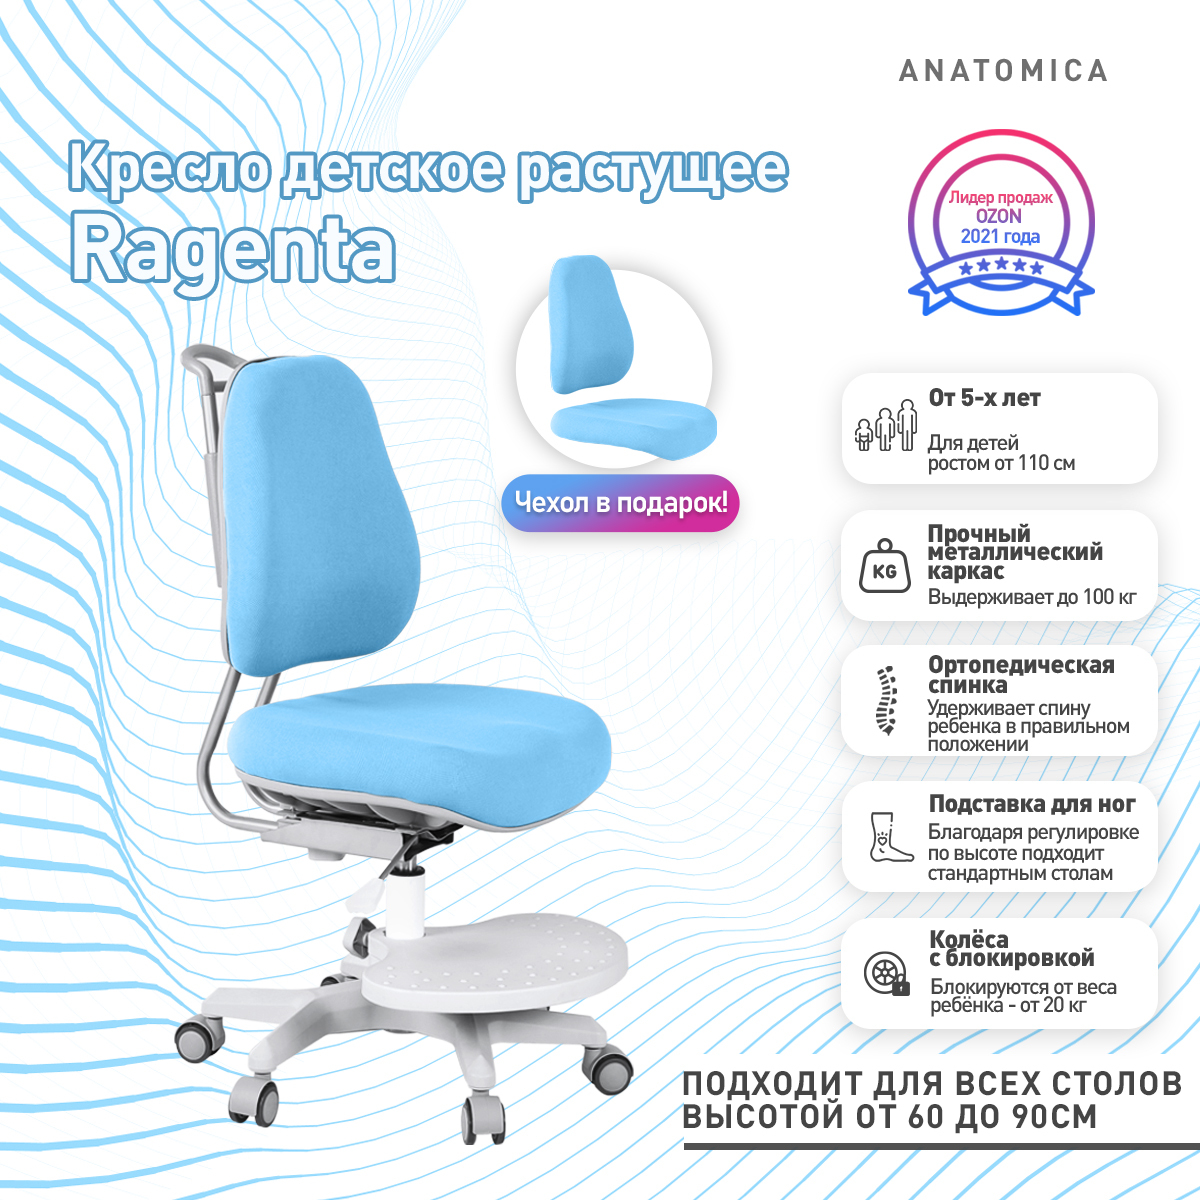 кресло anatomico ragenta с подлокотниками